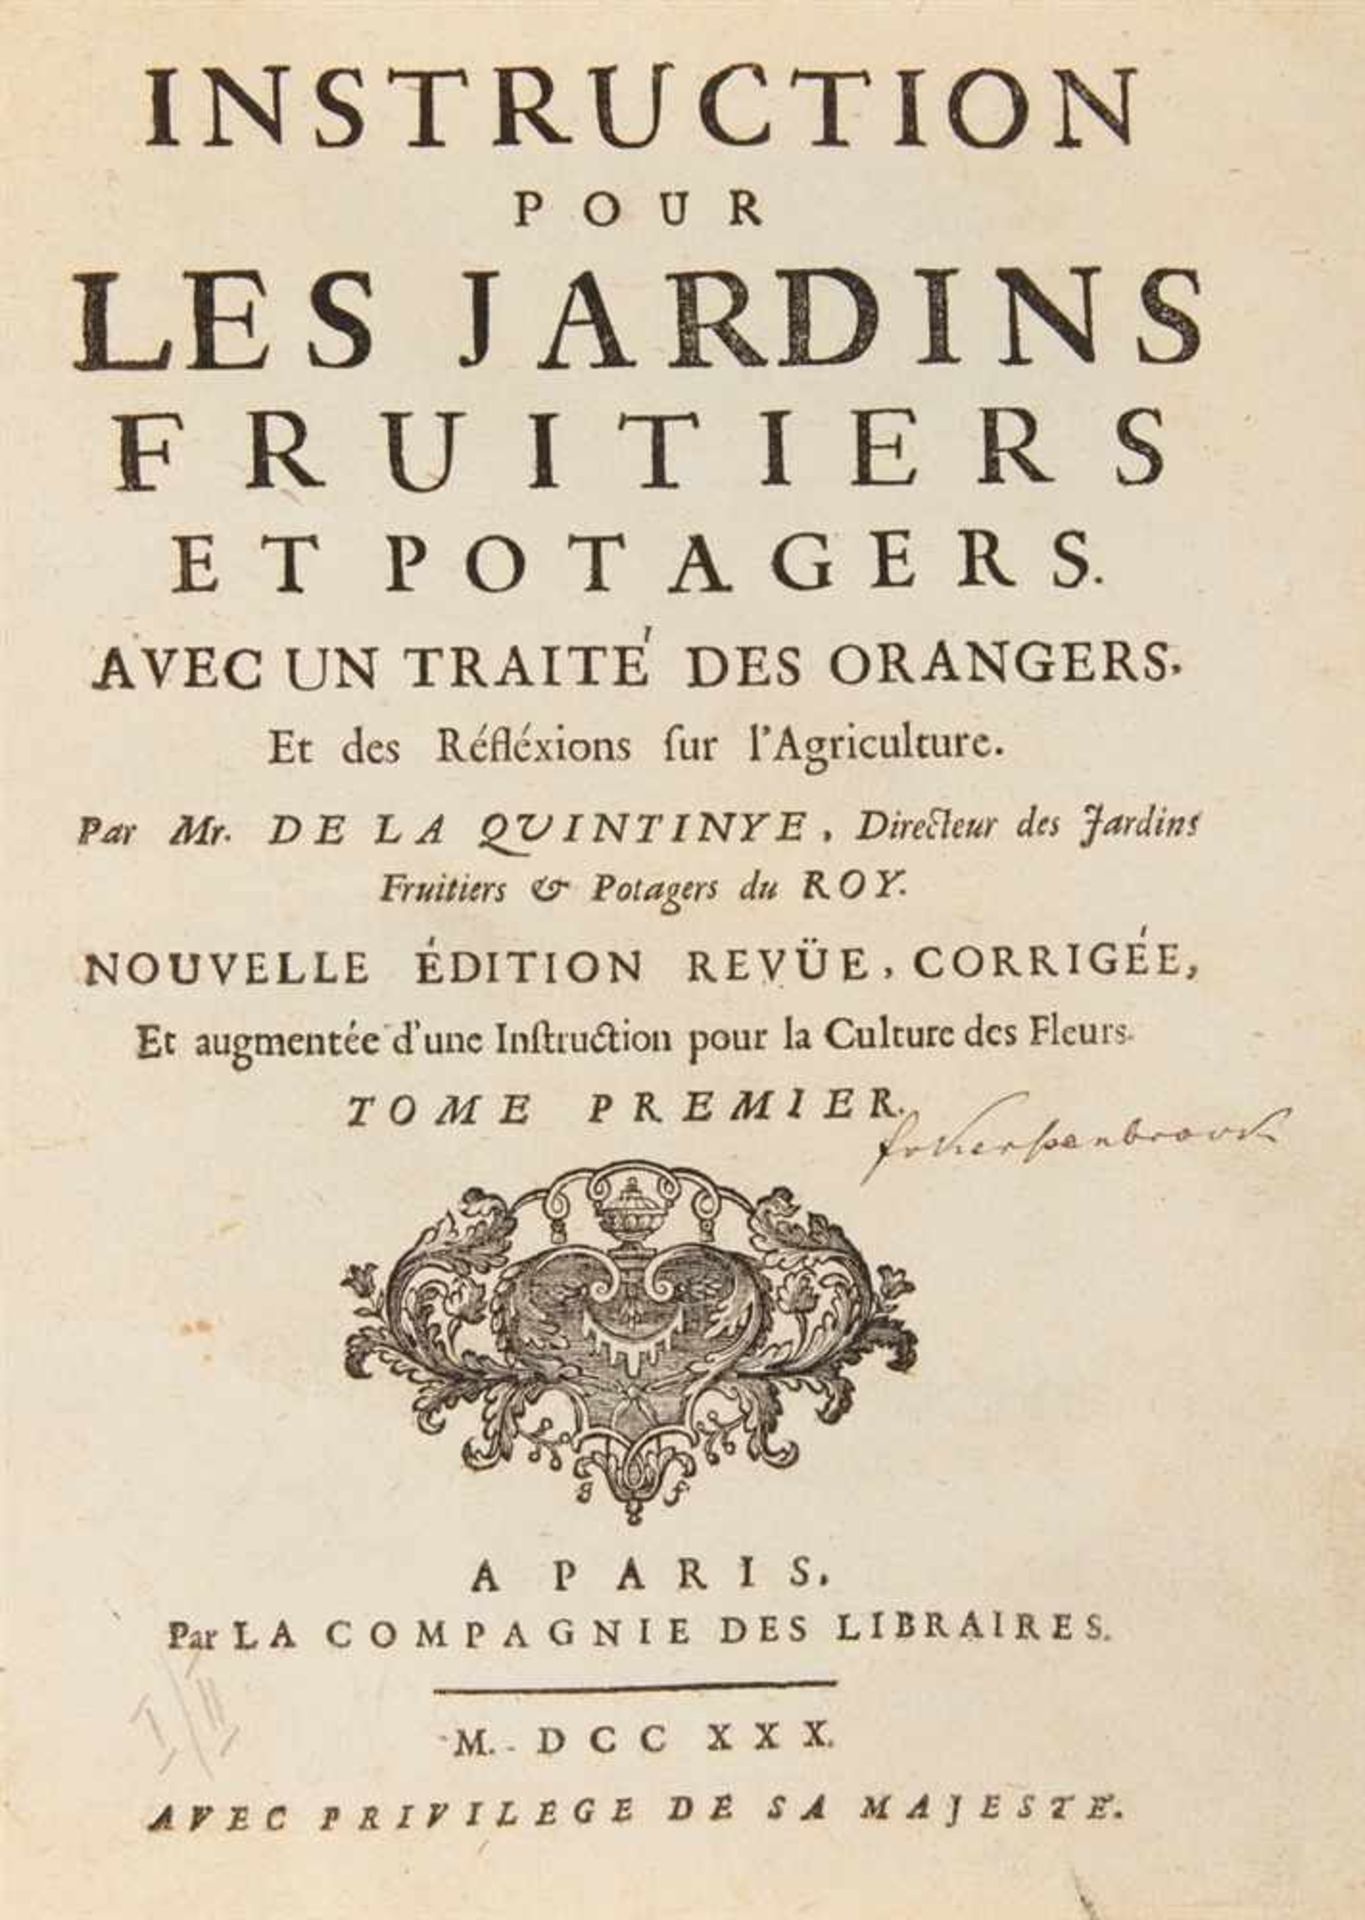 La Quintinye, Jean-Baptiste de: Instruction pour les jardins fruitiers et potagers avec un traité